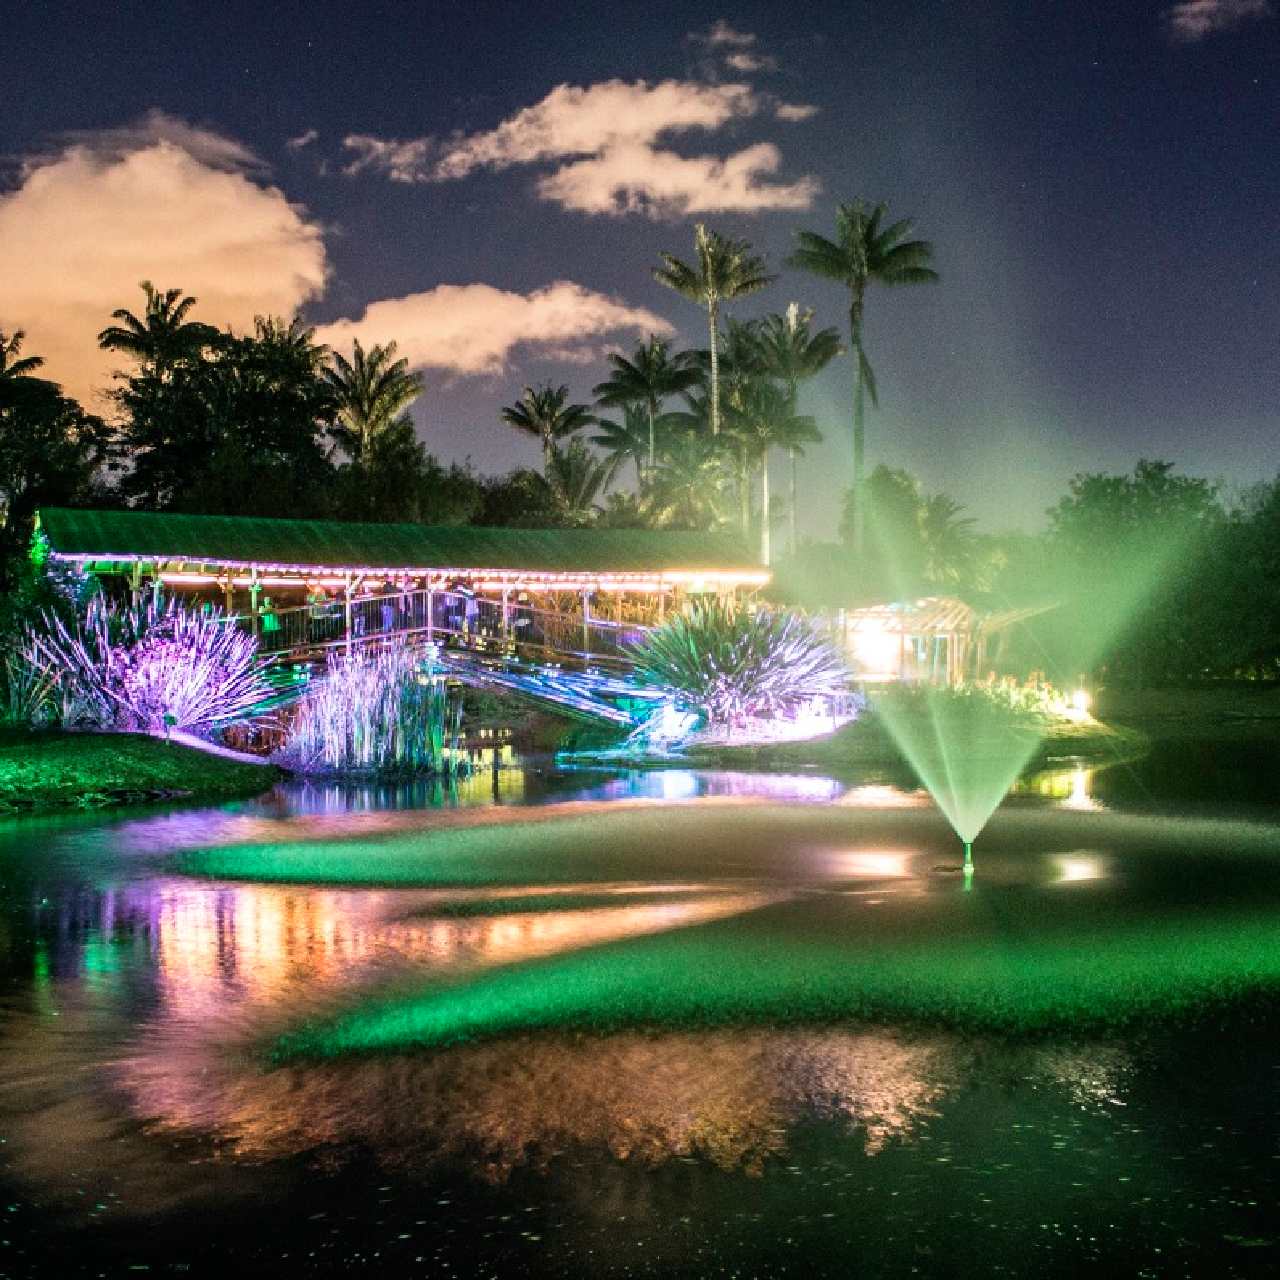 Hoy viernes regresa el Jardín Botánico de noche gratis: ¡No te lo pierdas!